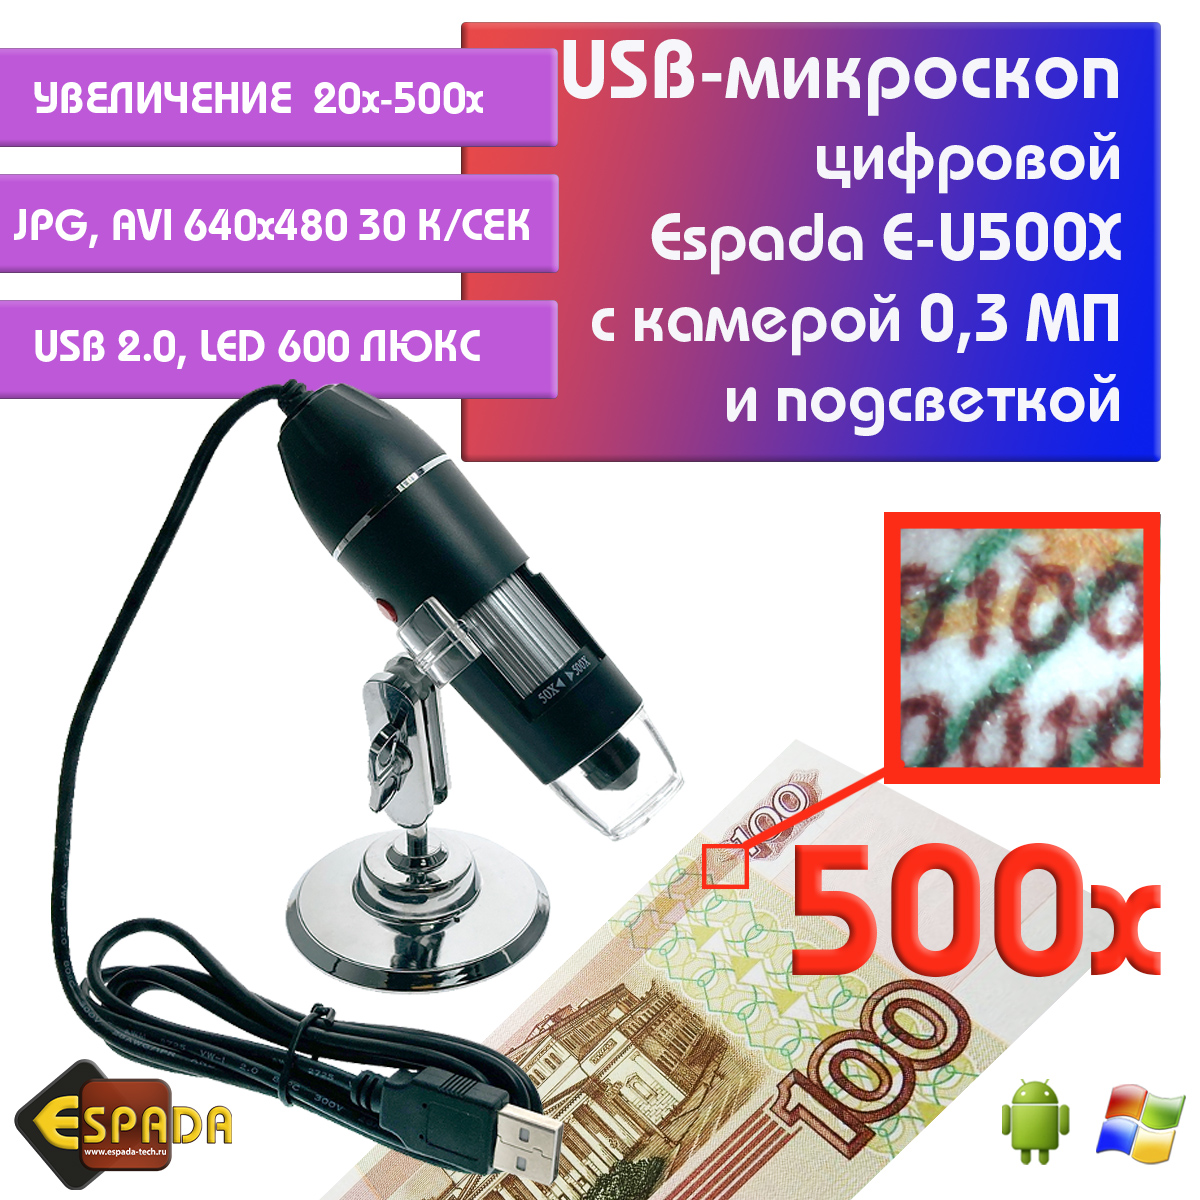 Портативный цифровой USB-микроскоп Espada E-U500X c камерой 0,3 МП и увеличением 500x видеокарта gigabyte rtx3070 gaming oc 8gb lhr gv n3070gaming oc 8gd 2 0